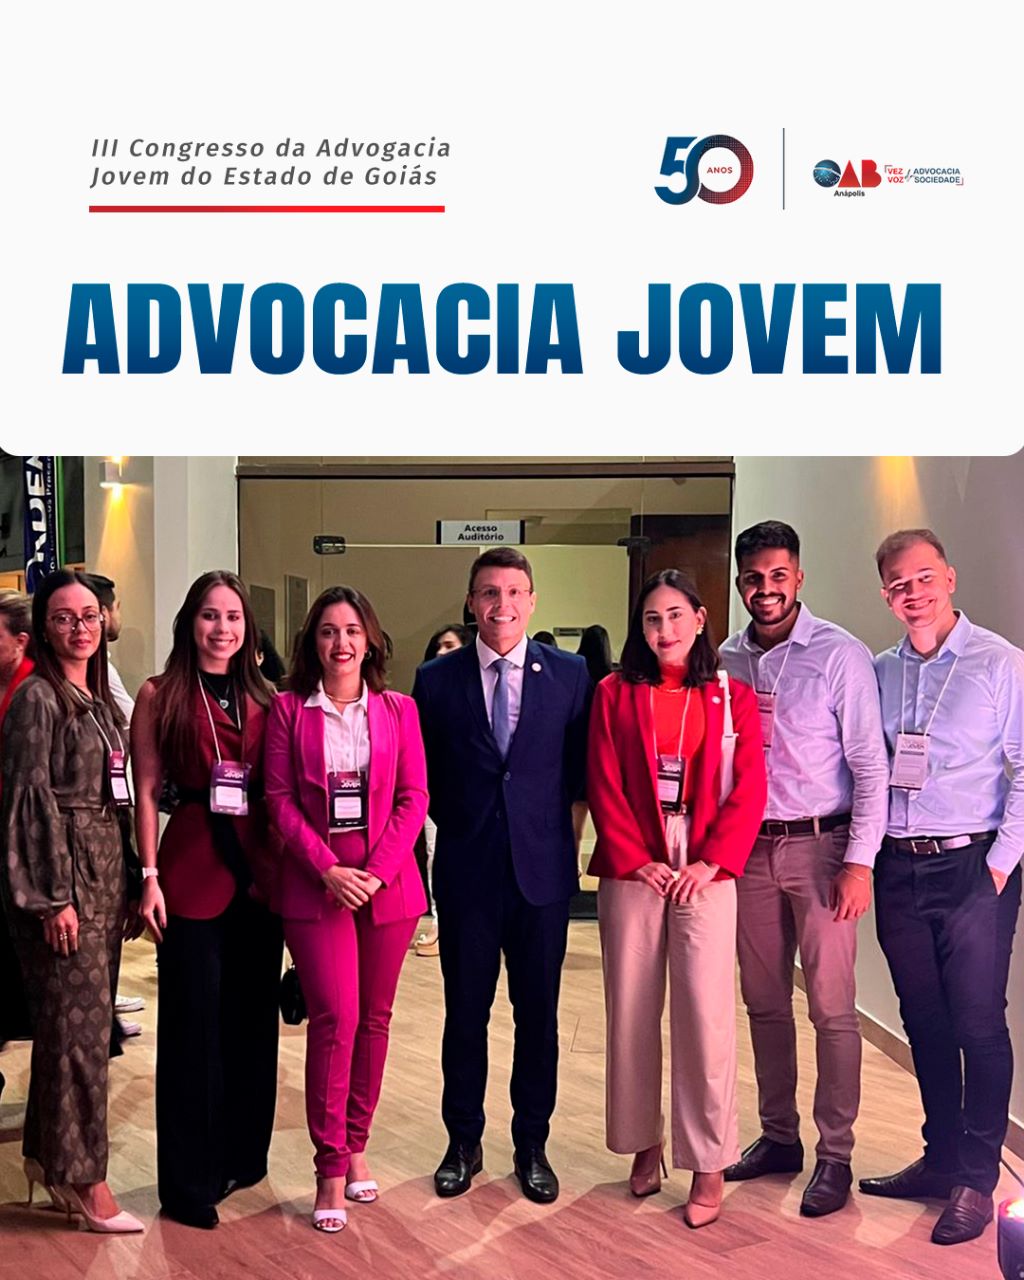 OAB Anápolis presente no III Congresso da Advogacia Jovem do Estado de Goiás